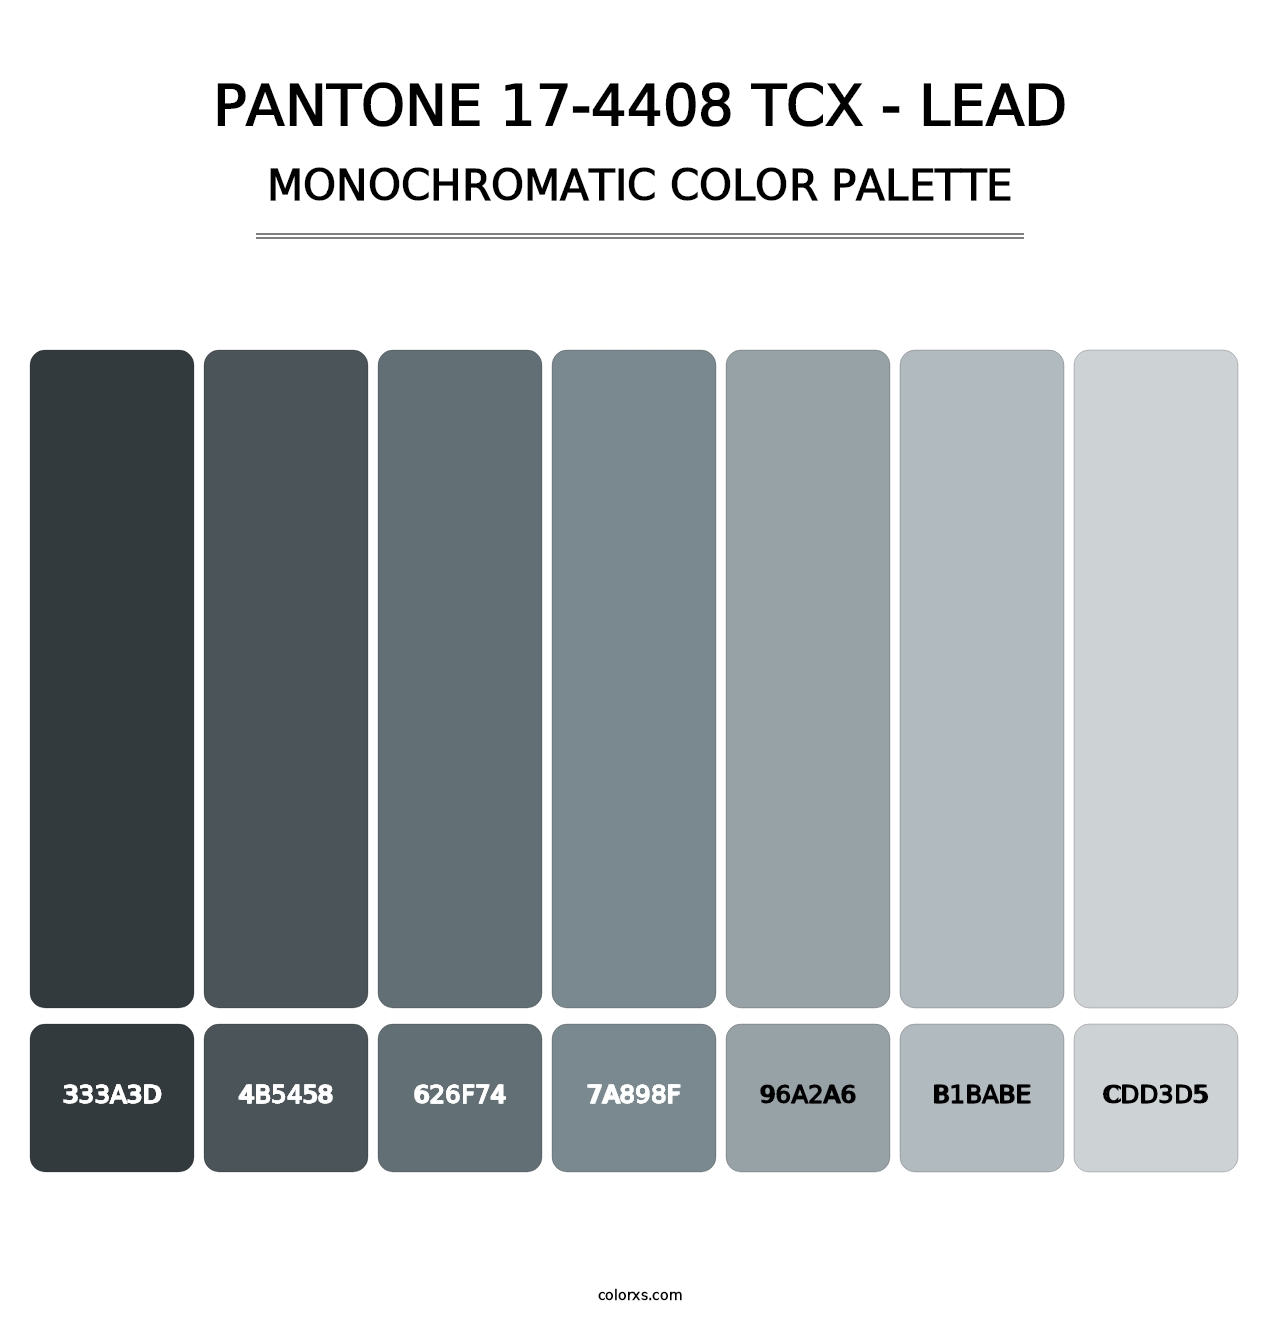 PANTONE 17-4408 TCX - Lead - Monochromatic Color Palette